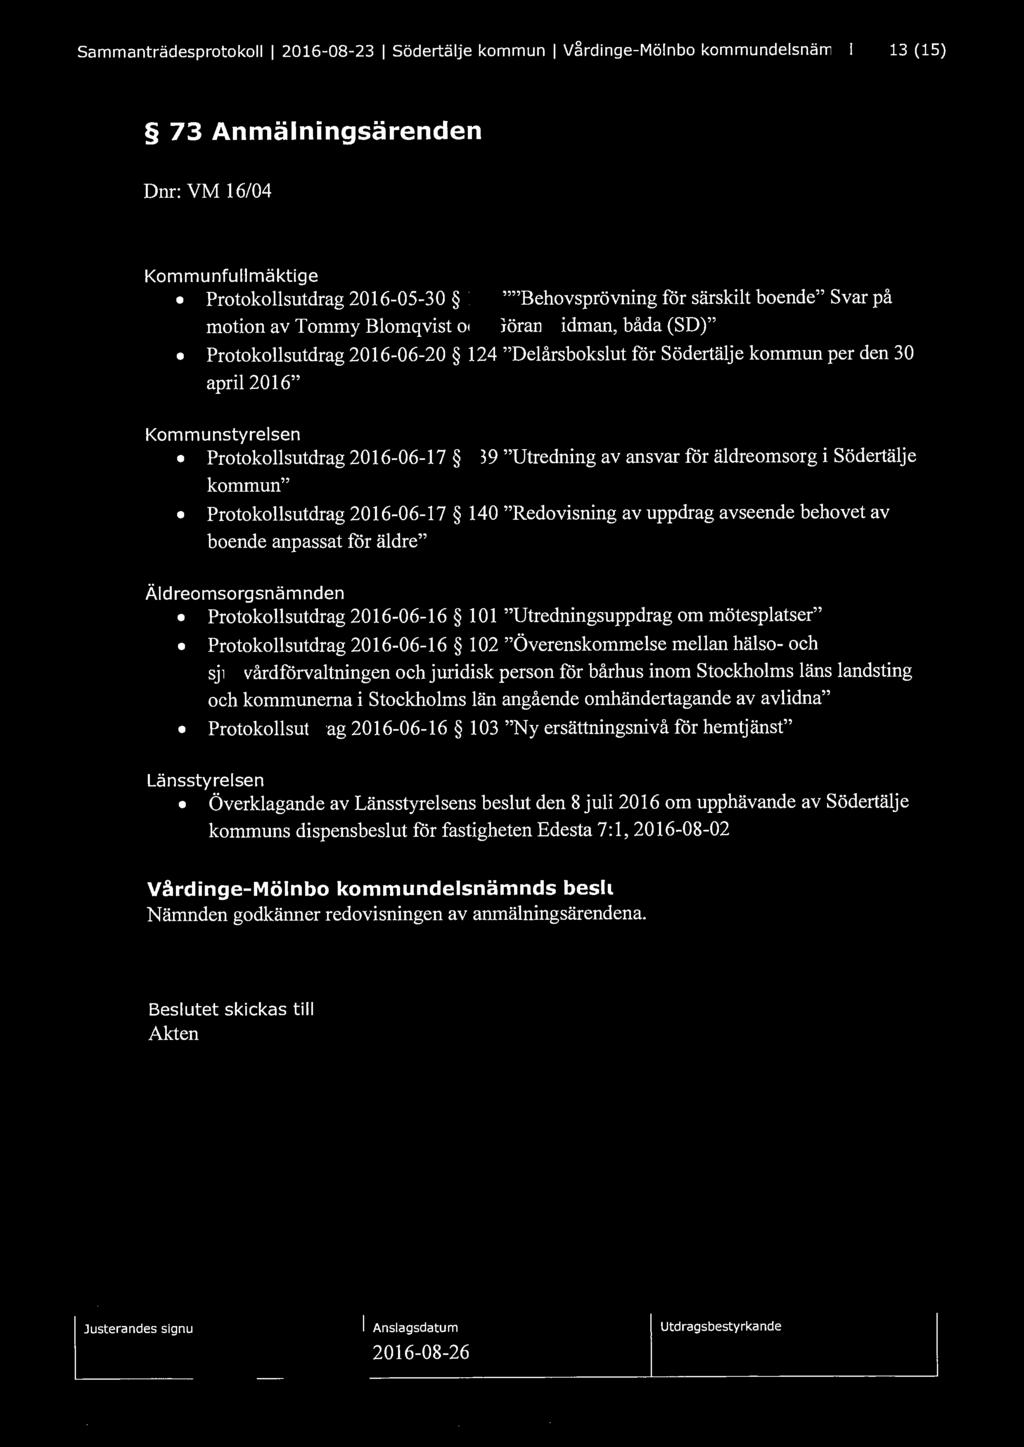 Sammanträdesprotokoll l 2016-08-23 l Södertälje kommun l Vårdinge-Mölnbo kommundelsnämnd 13 (15) 73 Anmälningsärenden Dnr: VM 16/04 Kommunfullmäktige Protokollsutdrag 2016-05-30 111 ""Behovsprövning